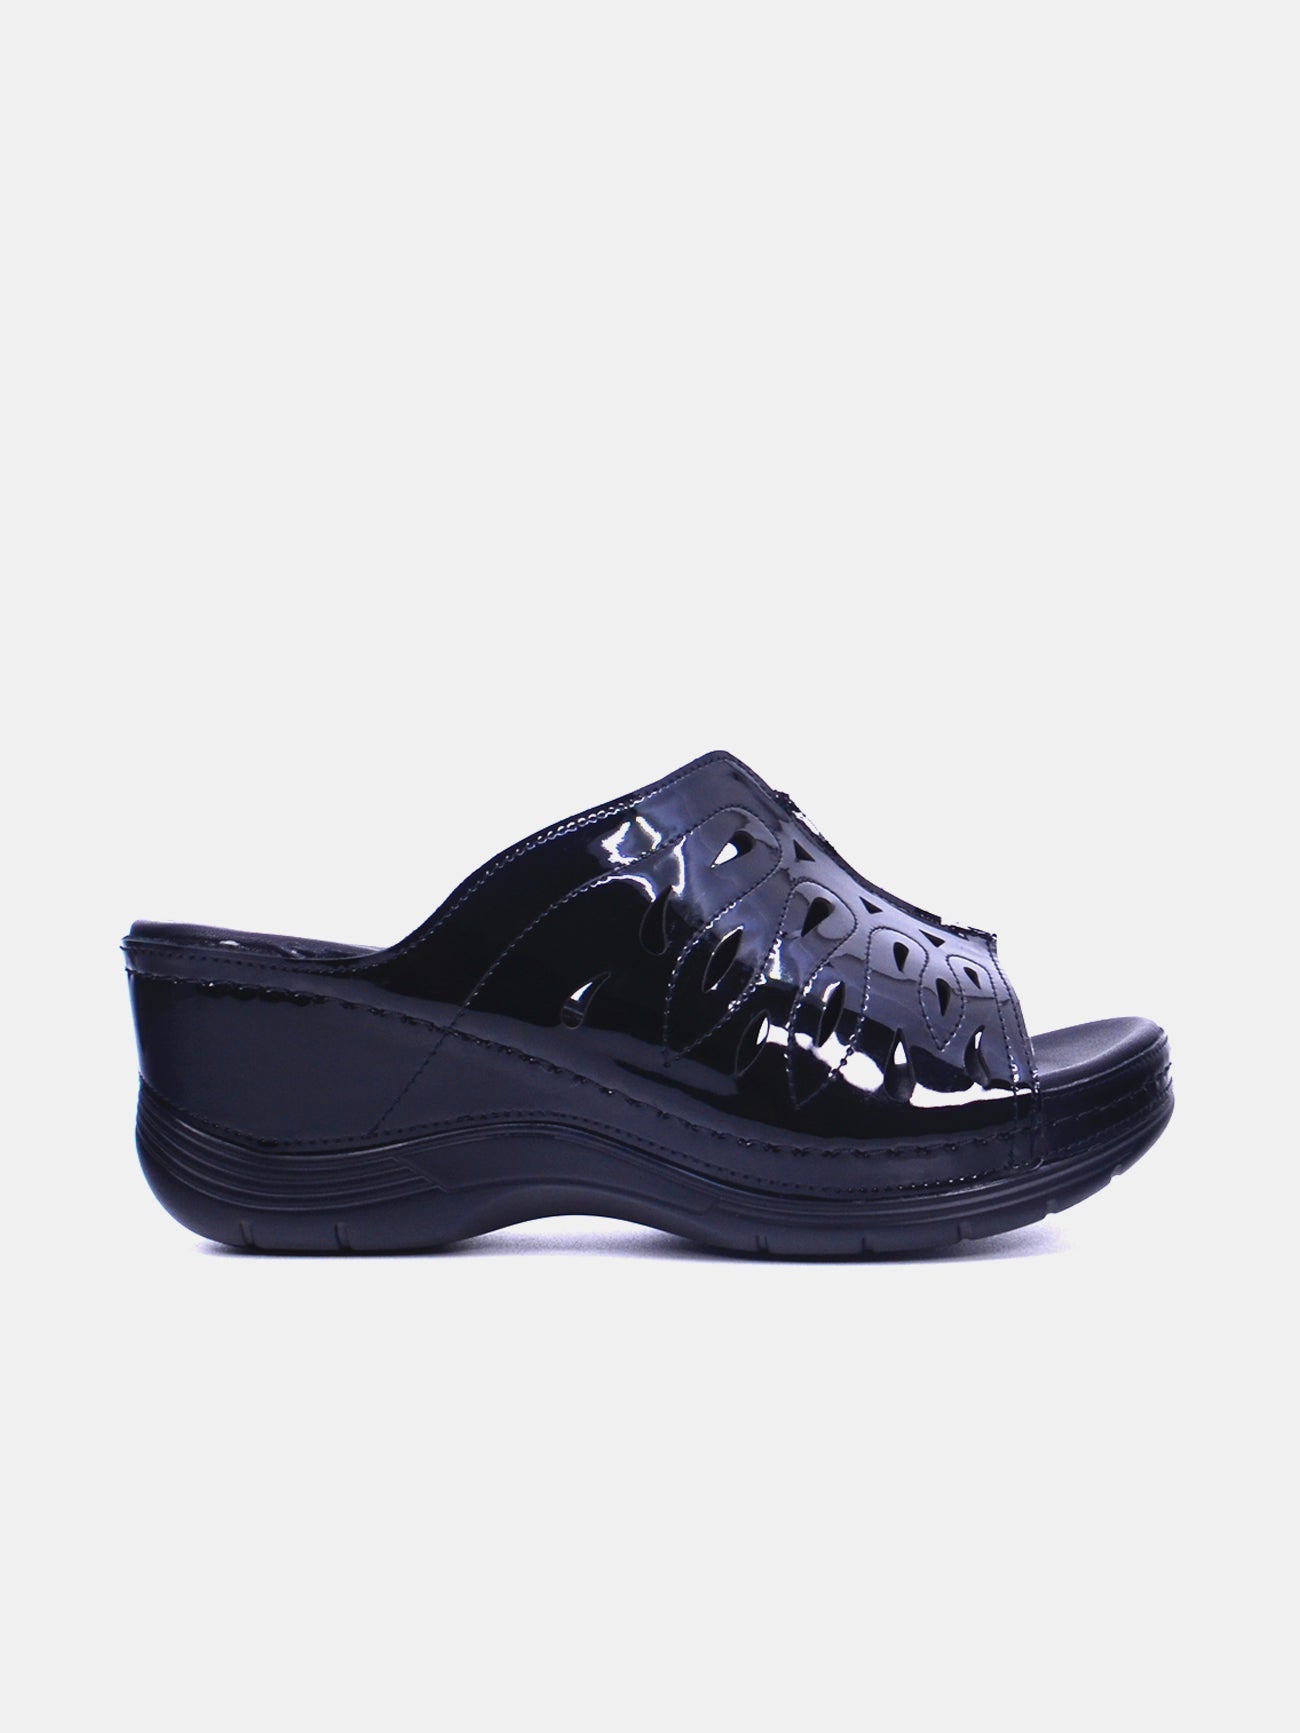 Michelle Morgan 2407-2 Women's Wedge Sandals #color_Black